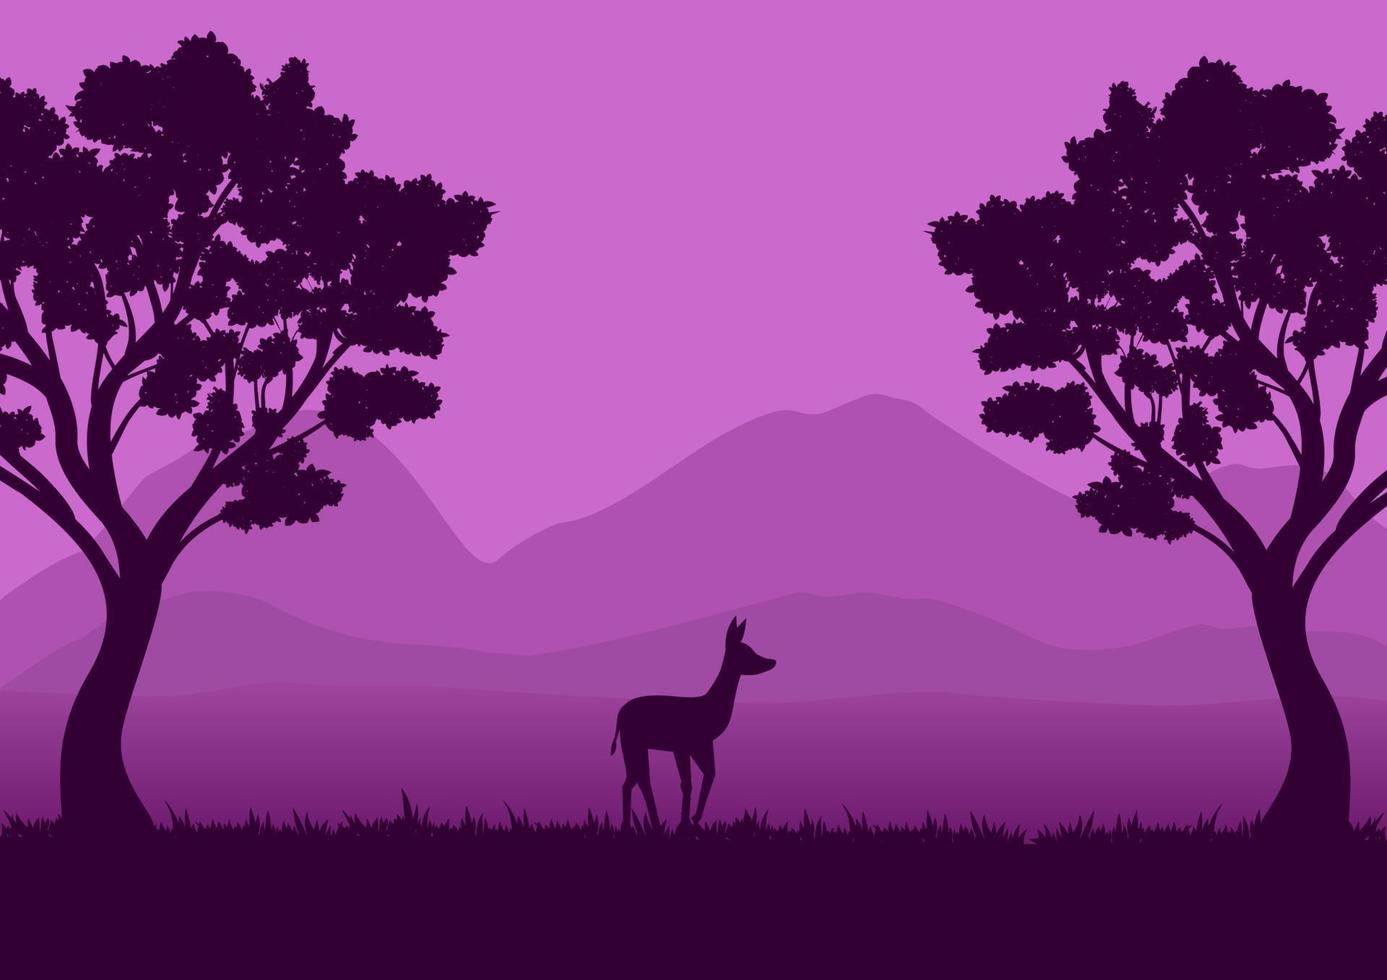 Wildtierlandschaftsvektorillustration mit einer purpurroten Schattenbild vektor